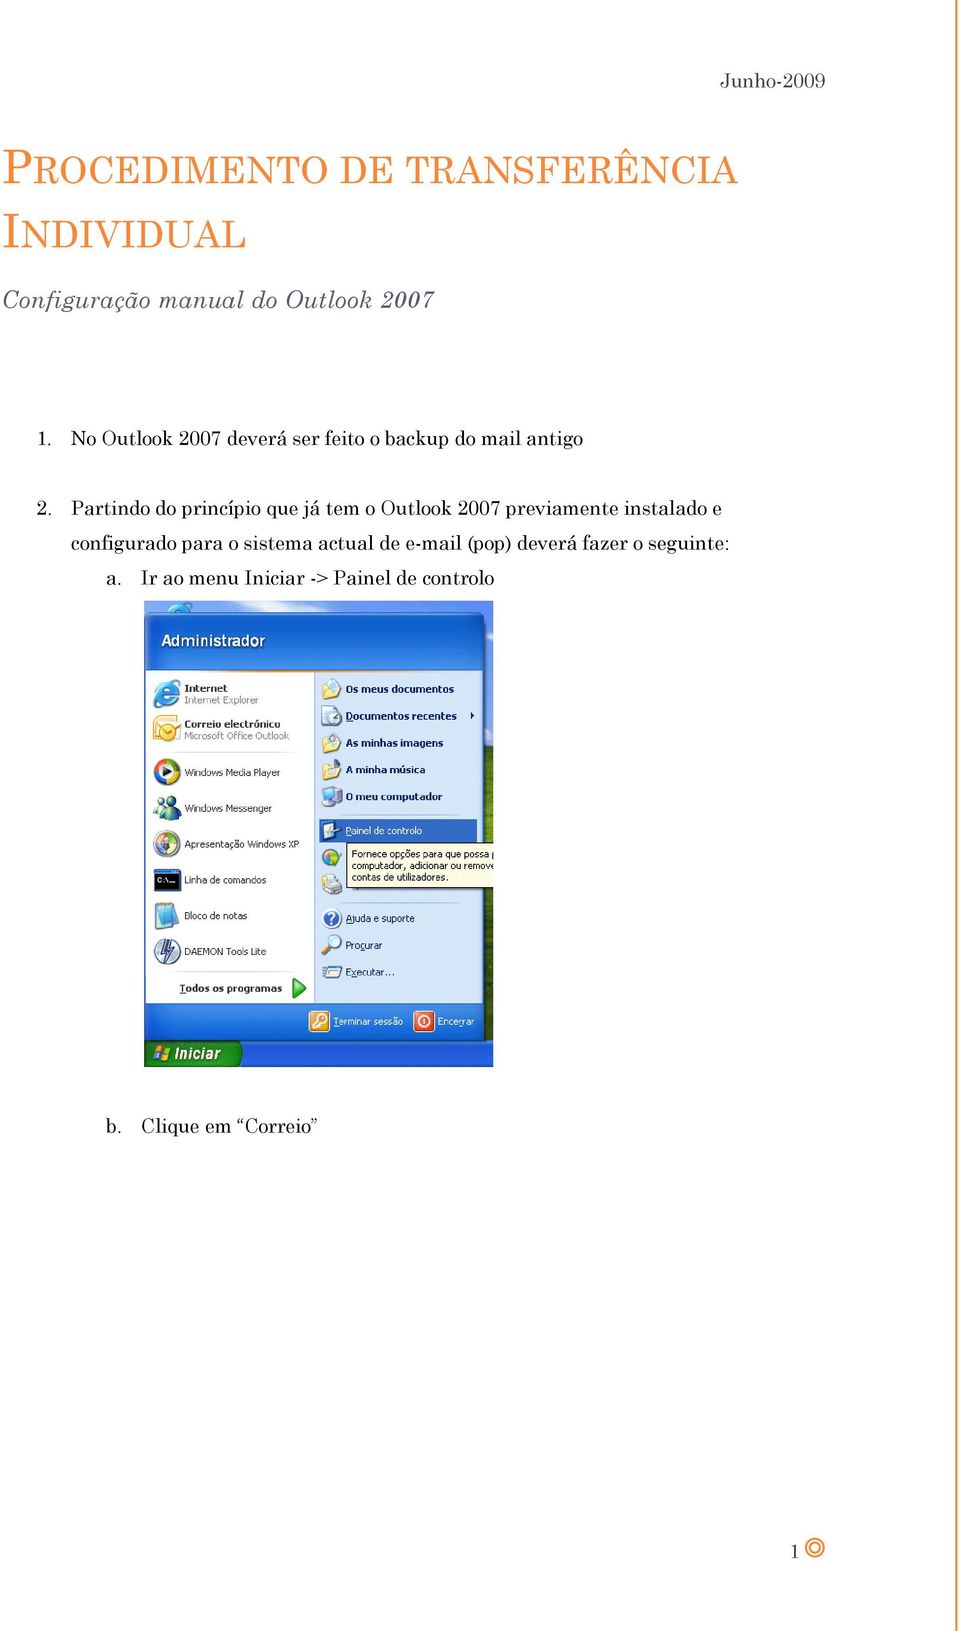 Partindo do princípio que já tem o Outlook 2007 previamente instalado e configurado para